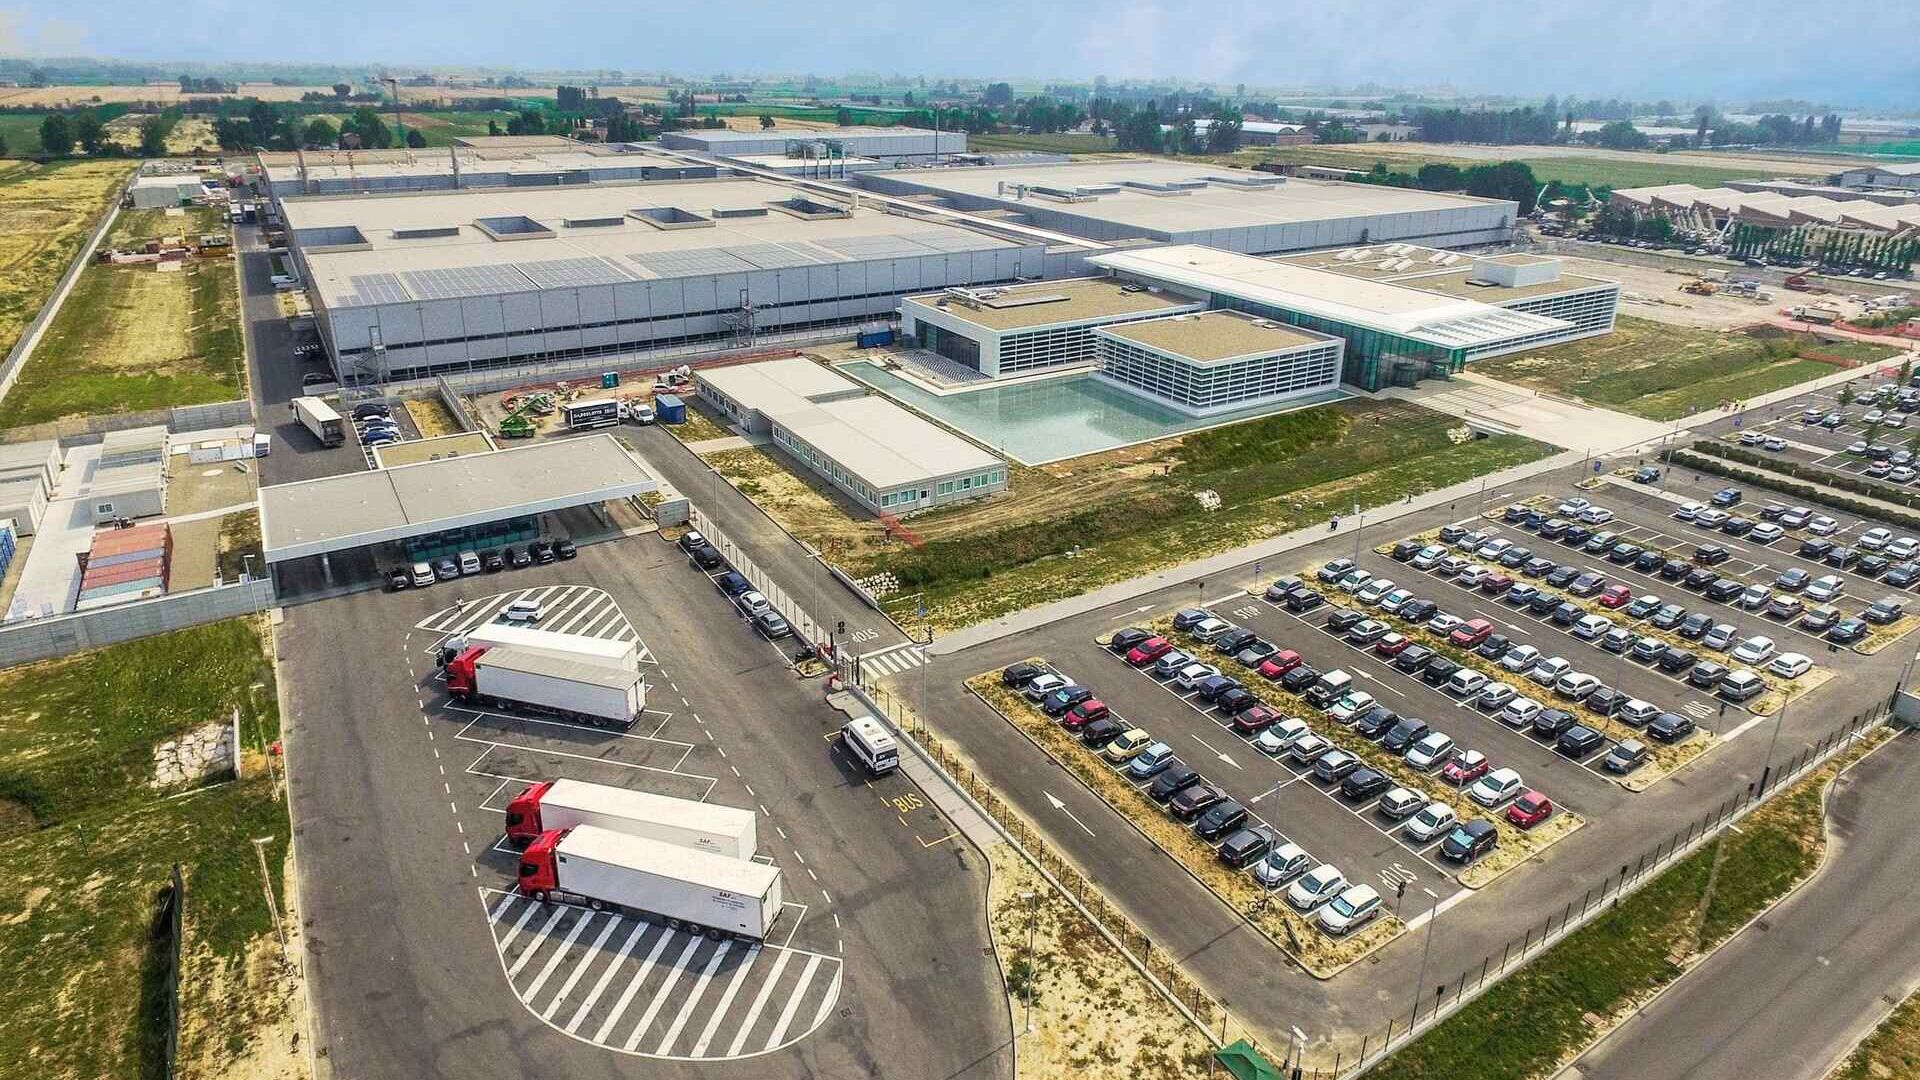 Philip Morris: Emilia-Romagna'daki Crespellano'daki Philip Morris İmalat ve Teknoloji Bologna fabrikasının yukarıdan görünümü